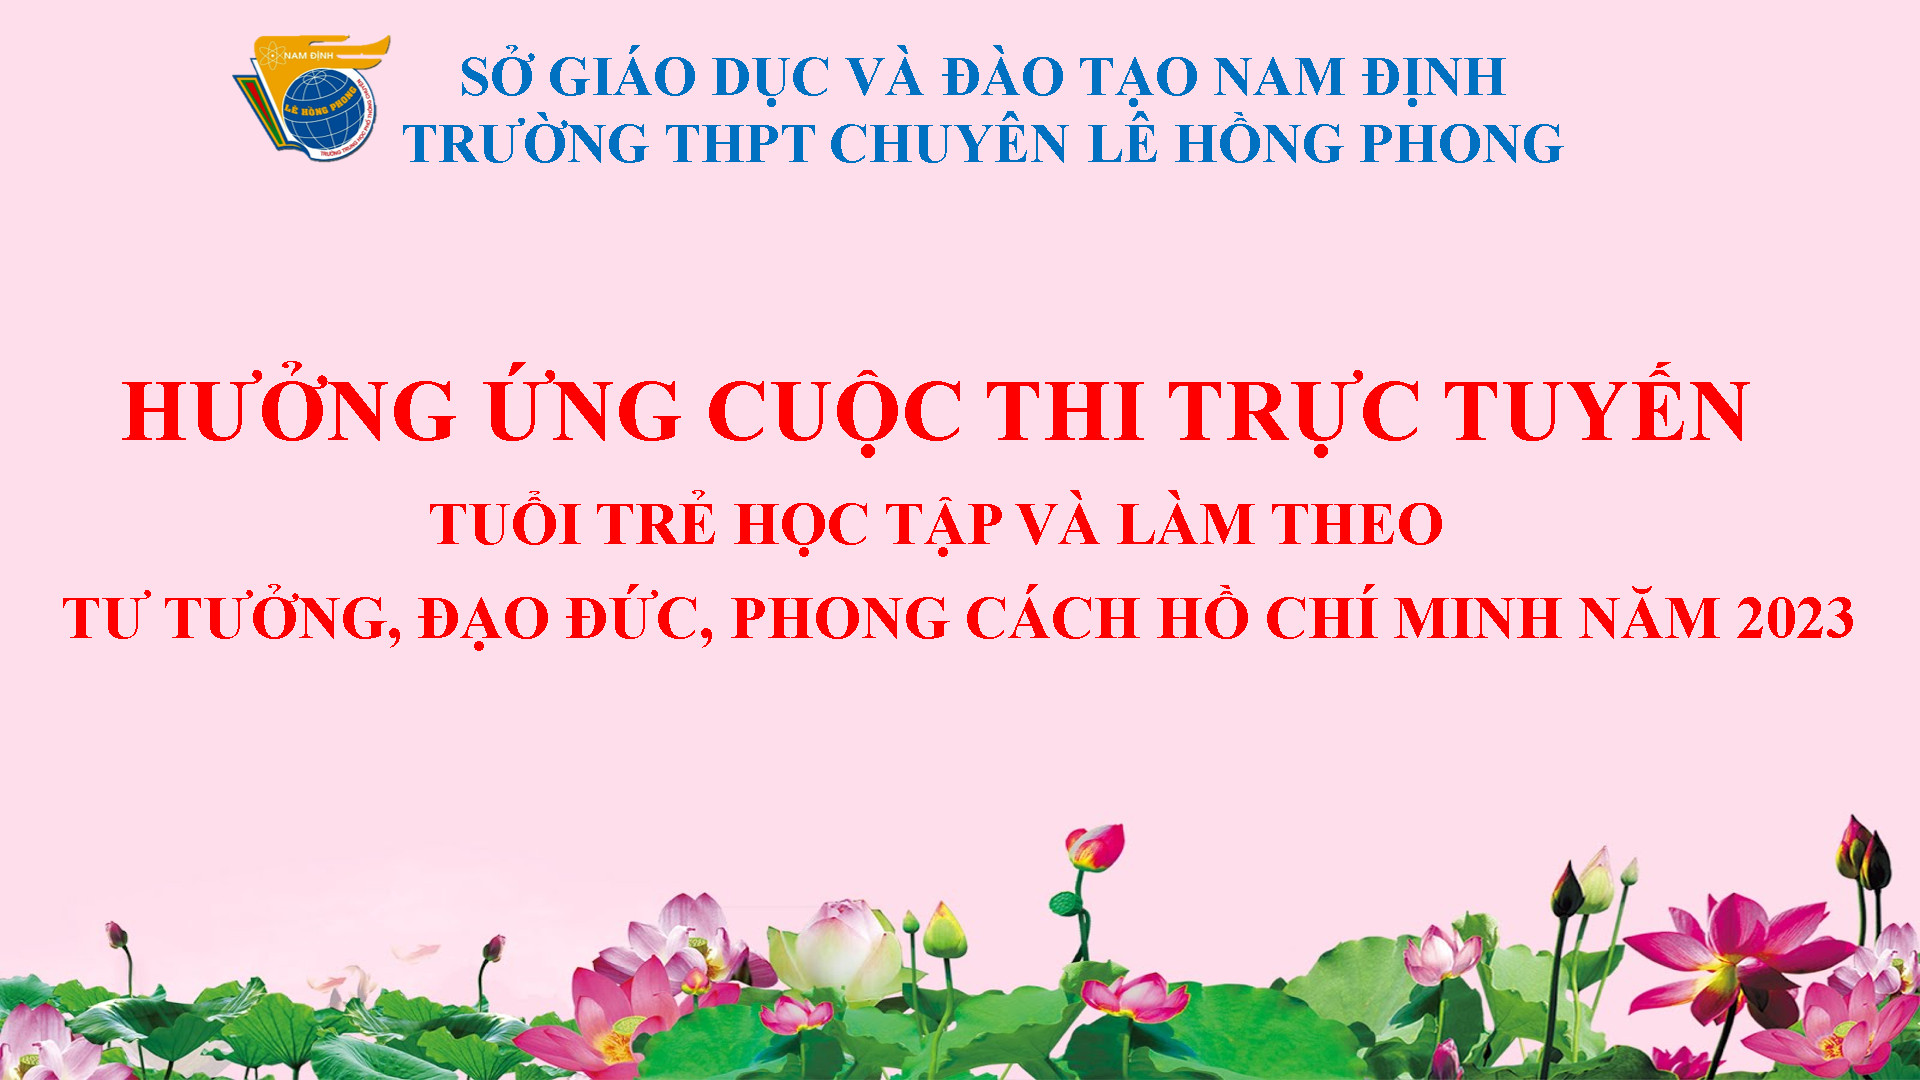 Trường THPT chuyên Lê Hồng Phong phát động Cuộc thi trực tuyến "Tuổi trẻ học tập và làm theo tư tưởng, đạo đức, phong cách Hồ Chí Minh” năm 2023